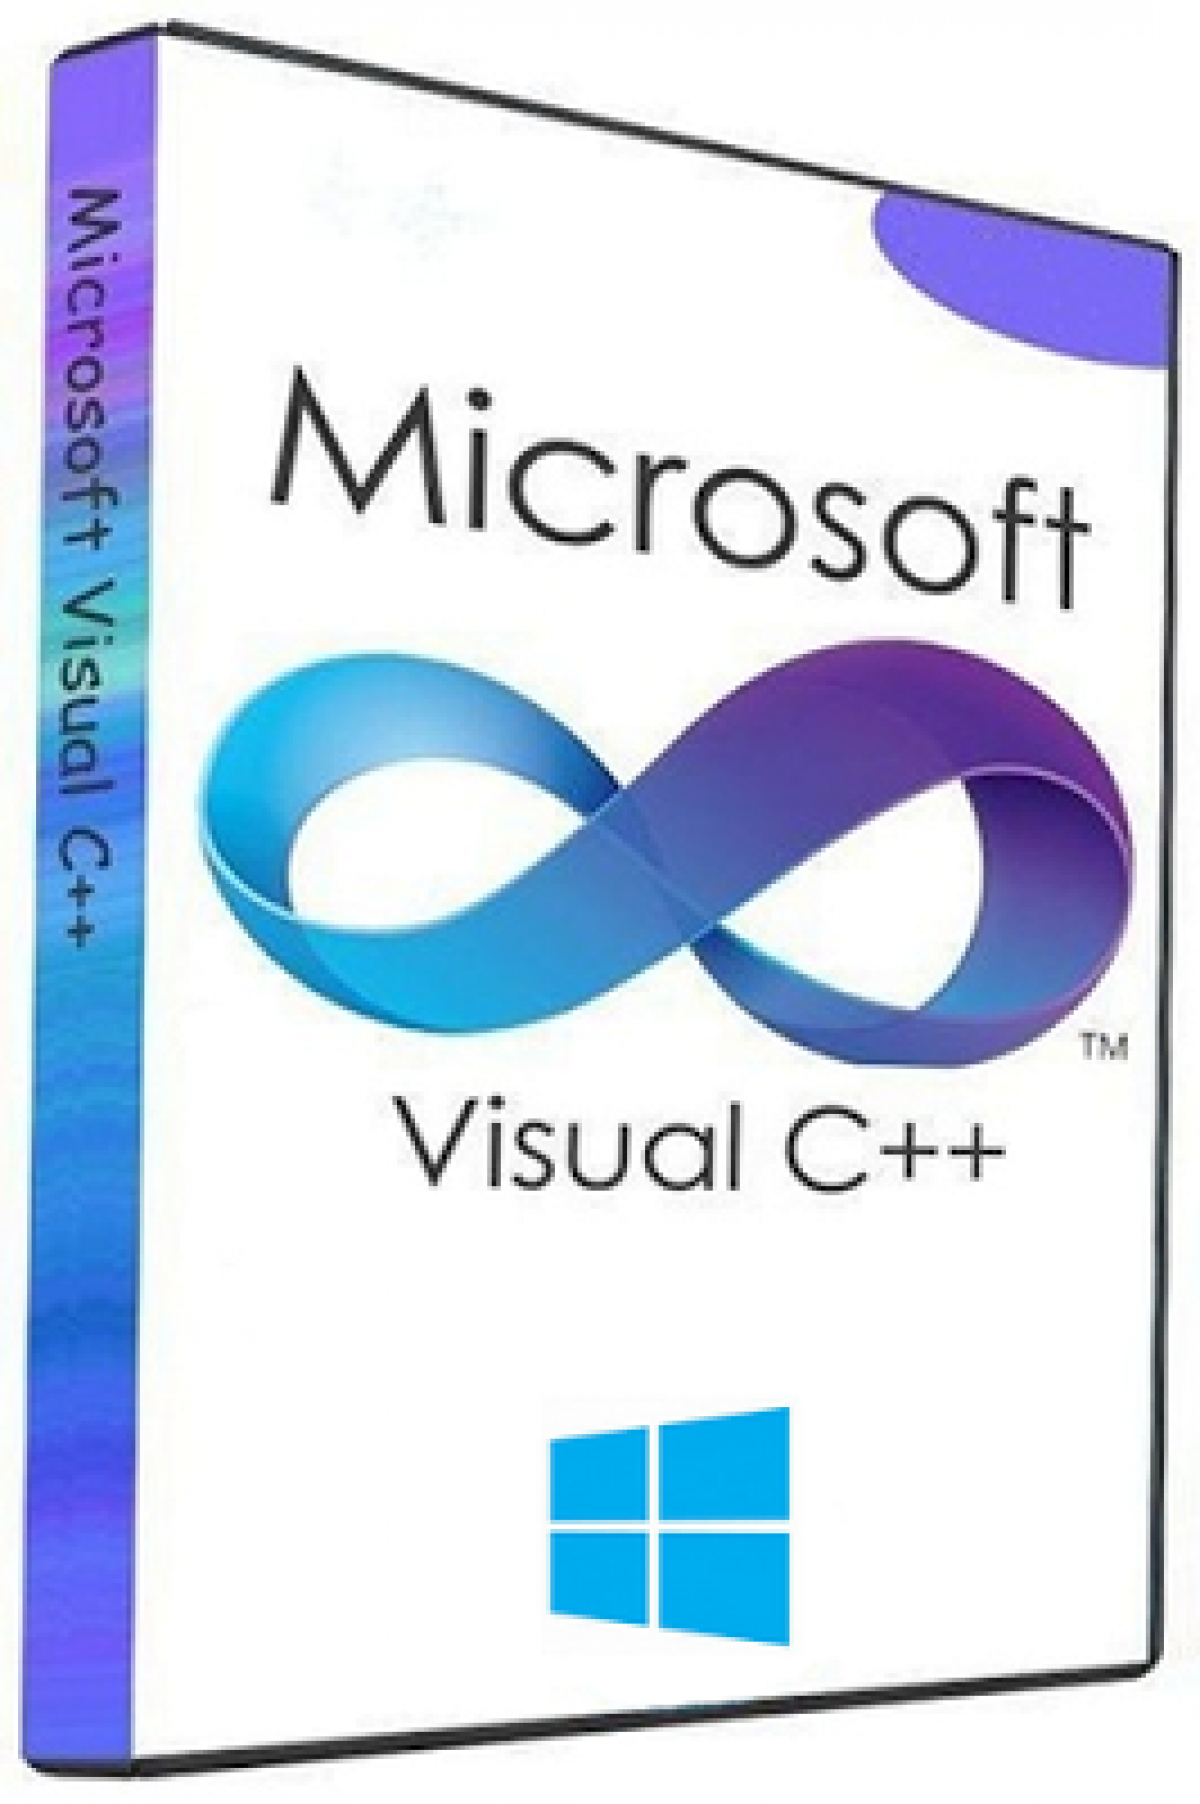 Microsoft visual c 2010 64 bit. Microsoft Visual c++. Microsoft c++. Microsoft Visual c Redistributable. Визуал c++.